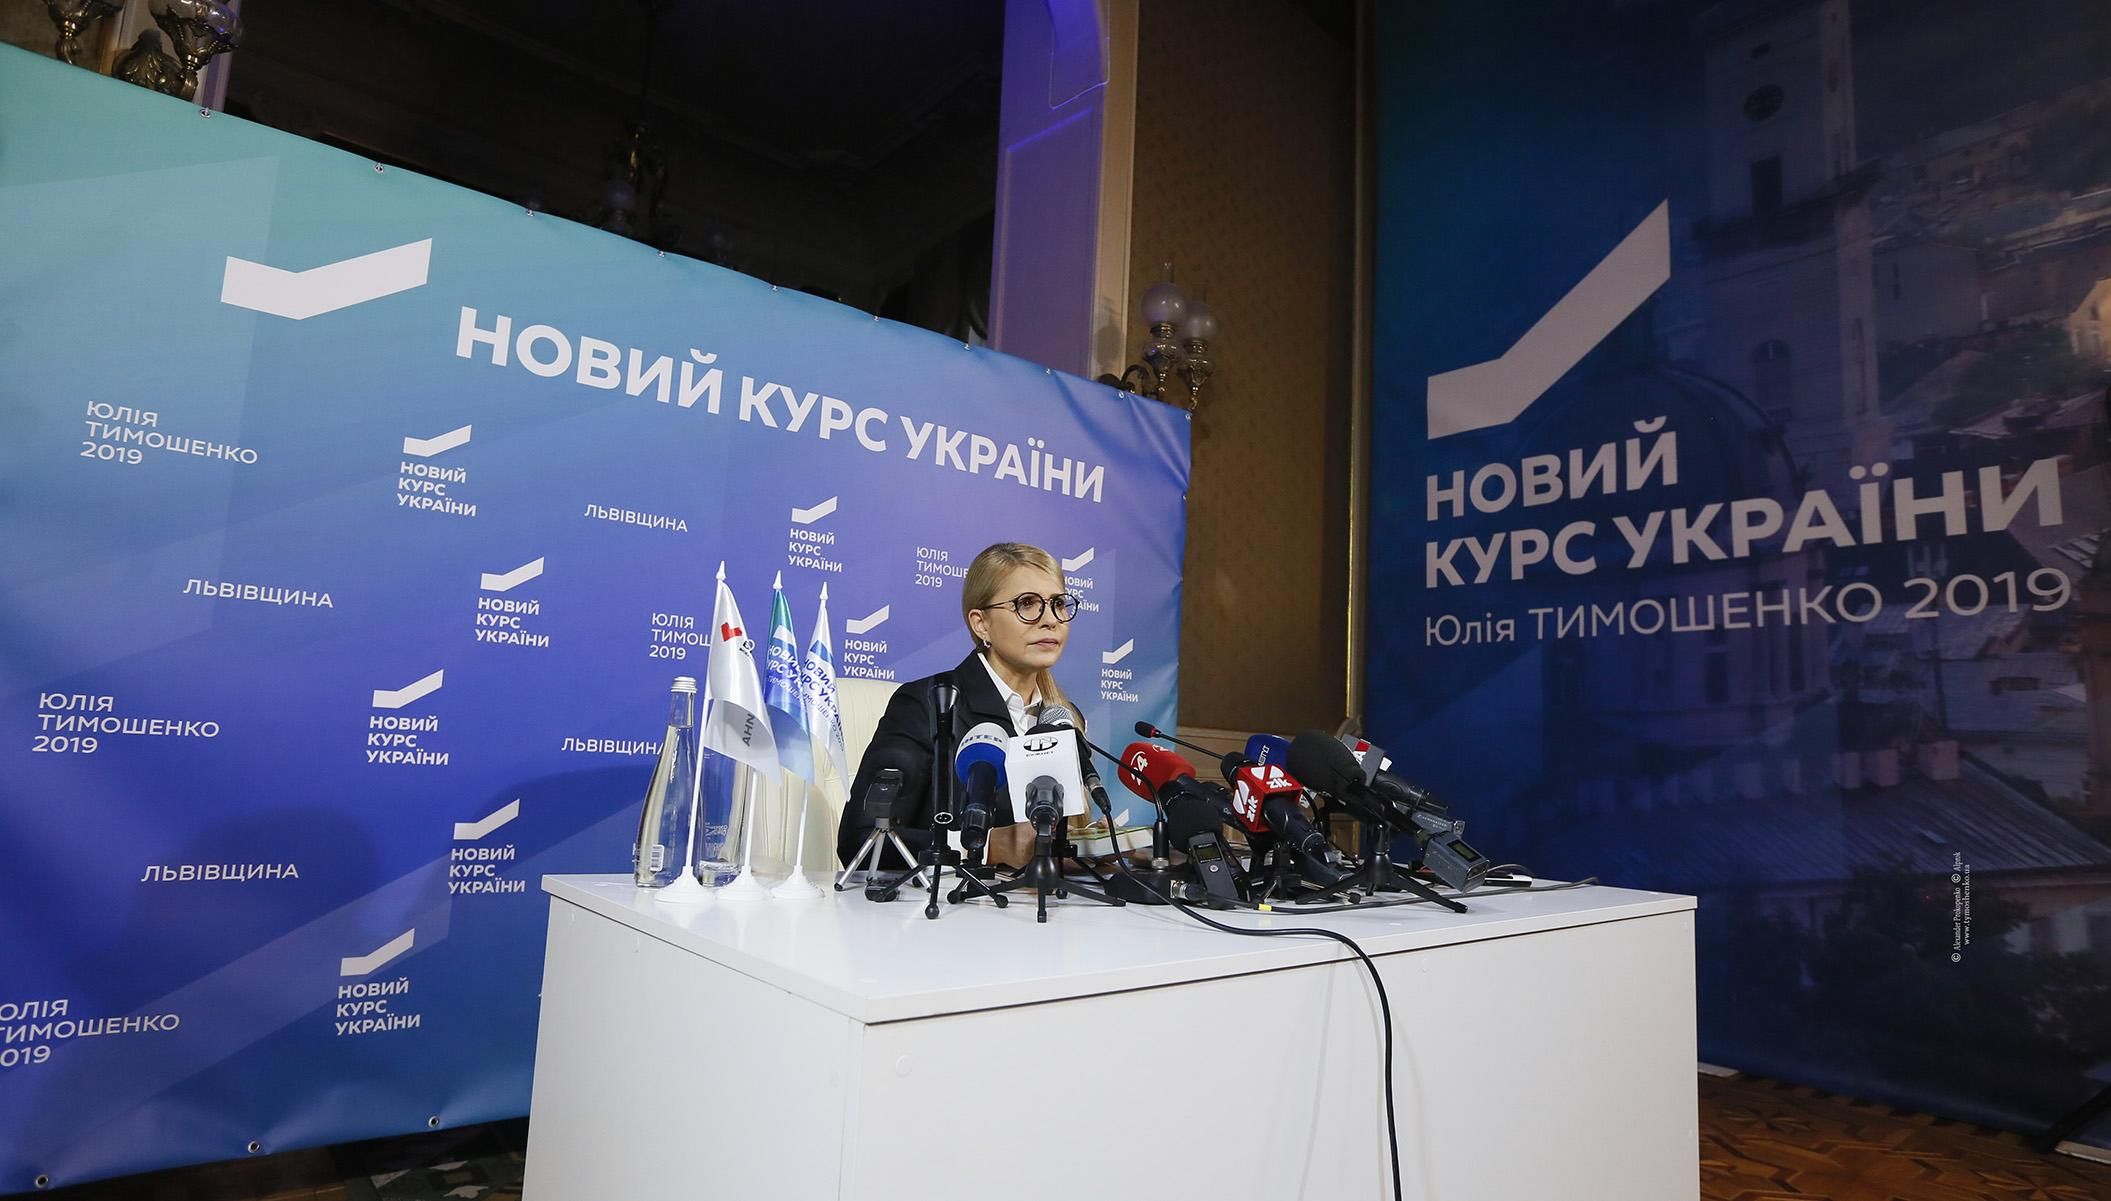 Мы готовы к сотрудничеству со всеми демократическими силами, – Юлия Тимошенко